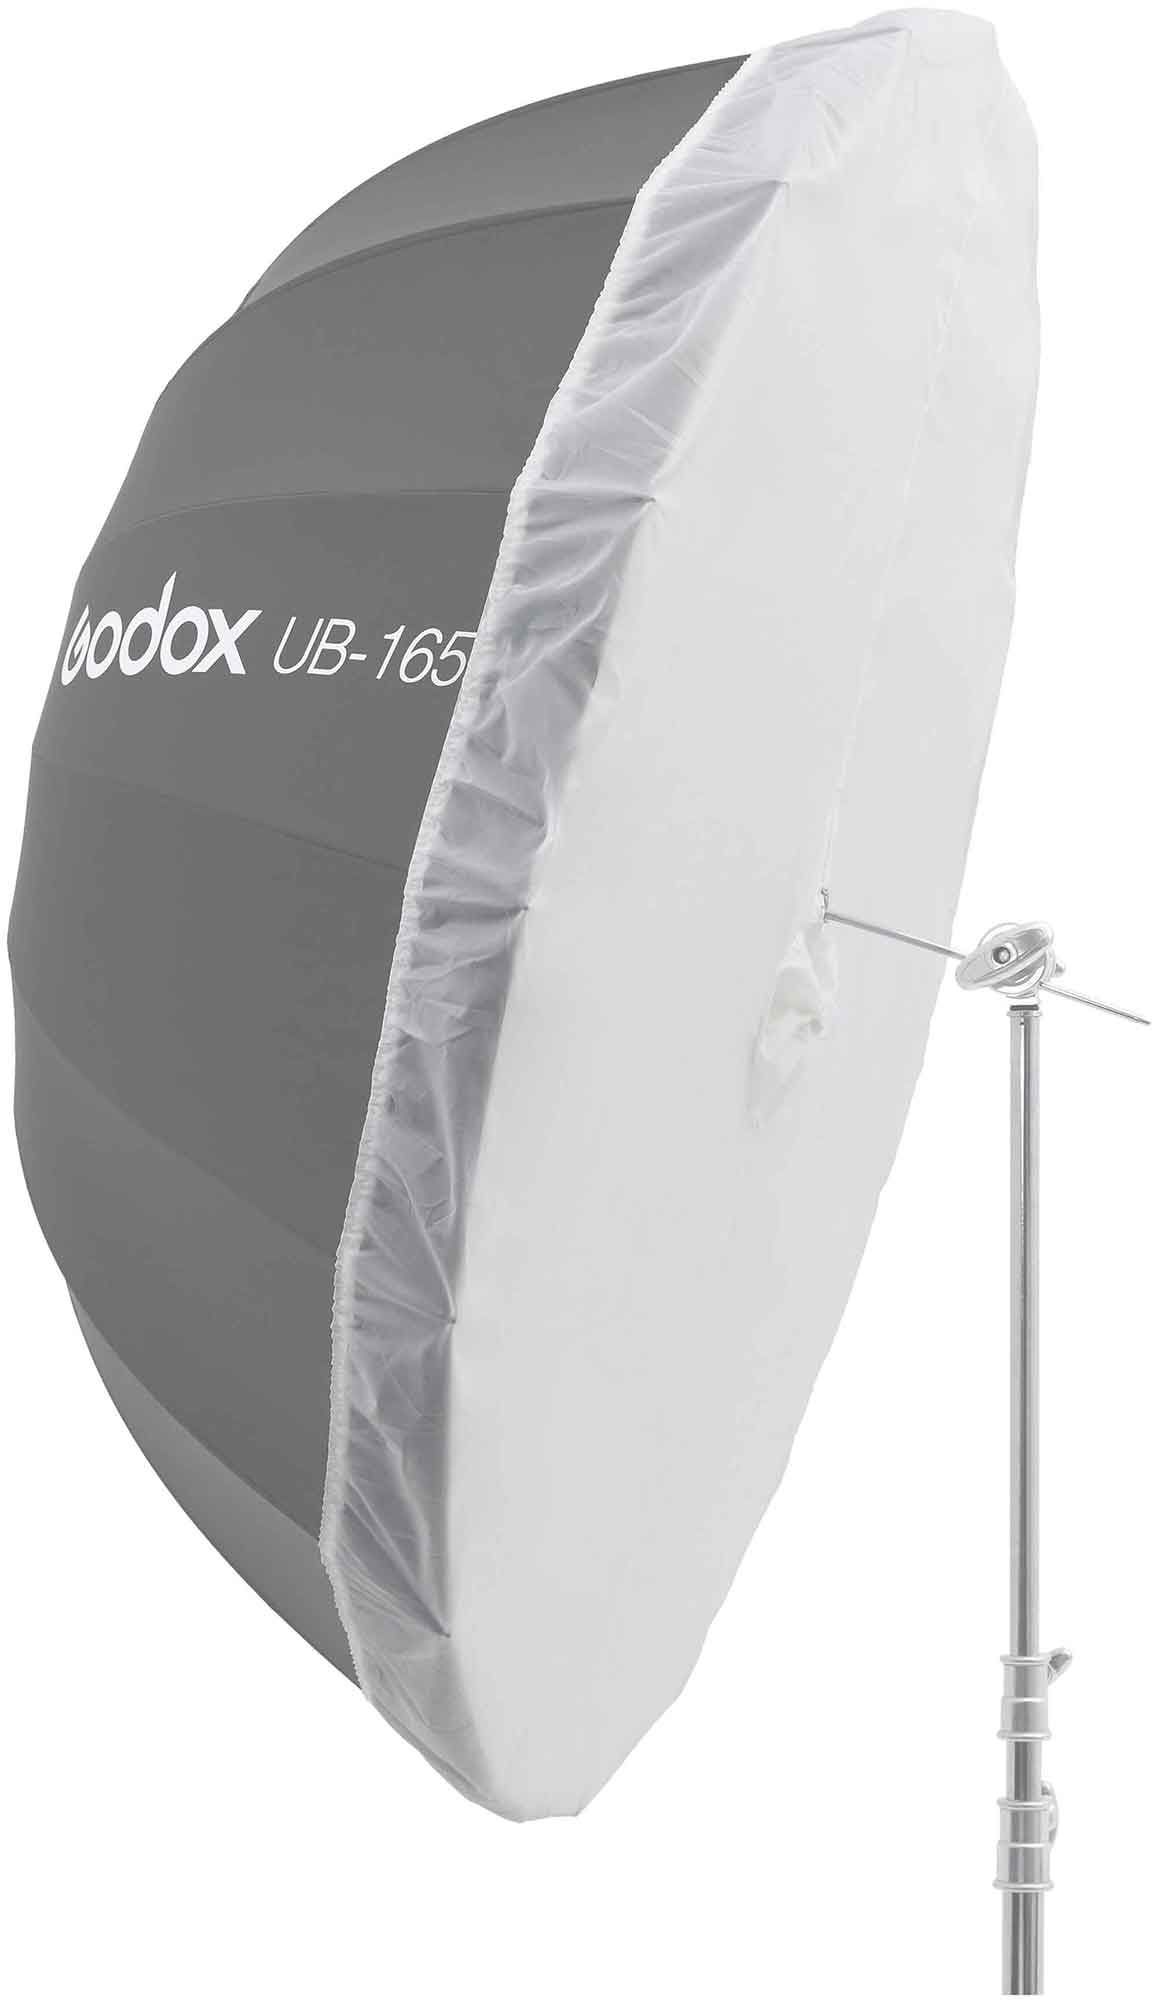 цена Рассеиватель Godox DPU-165T просветный для фотозонта